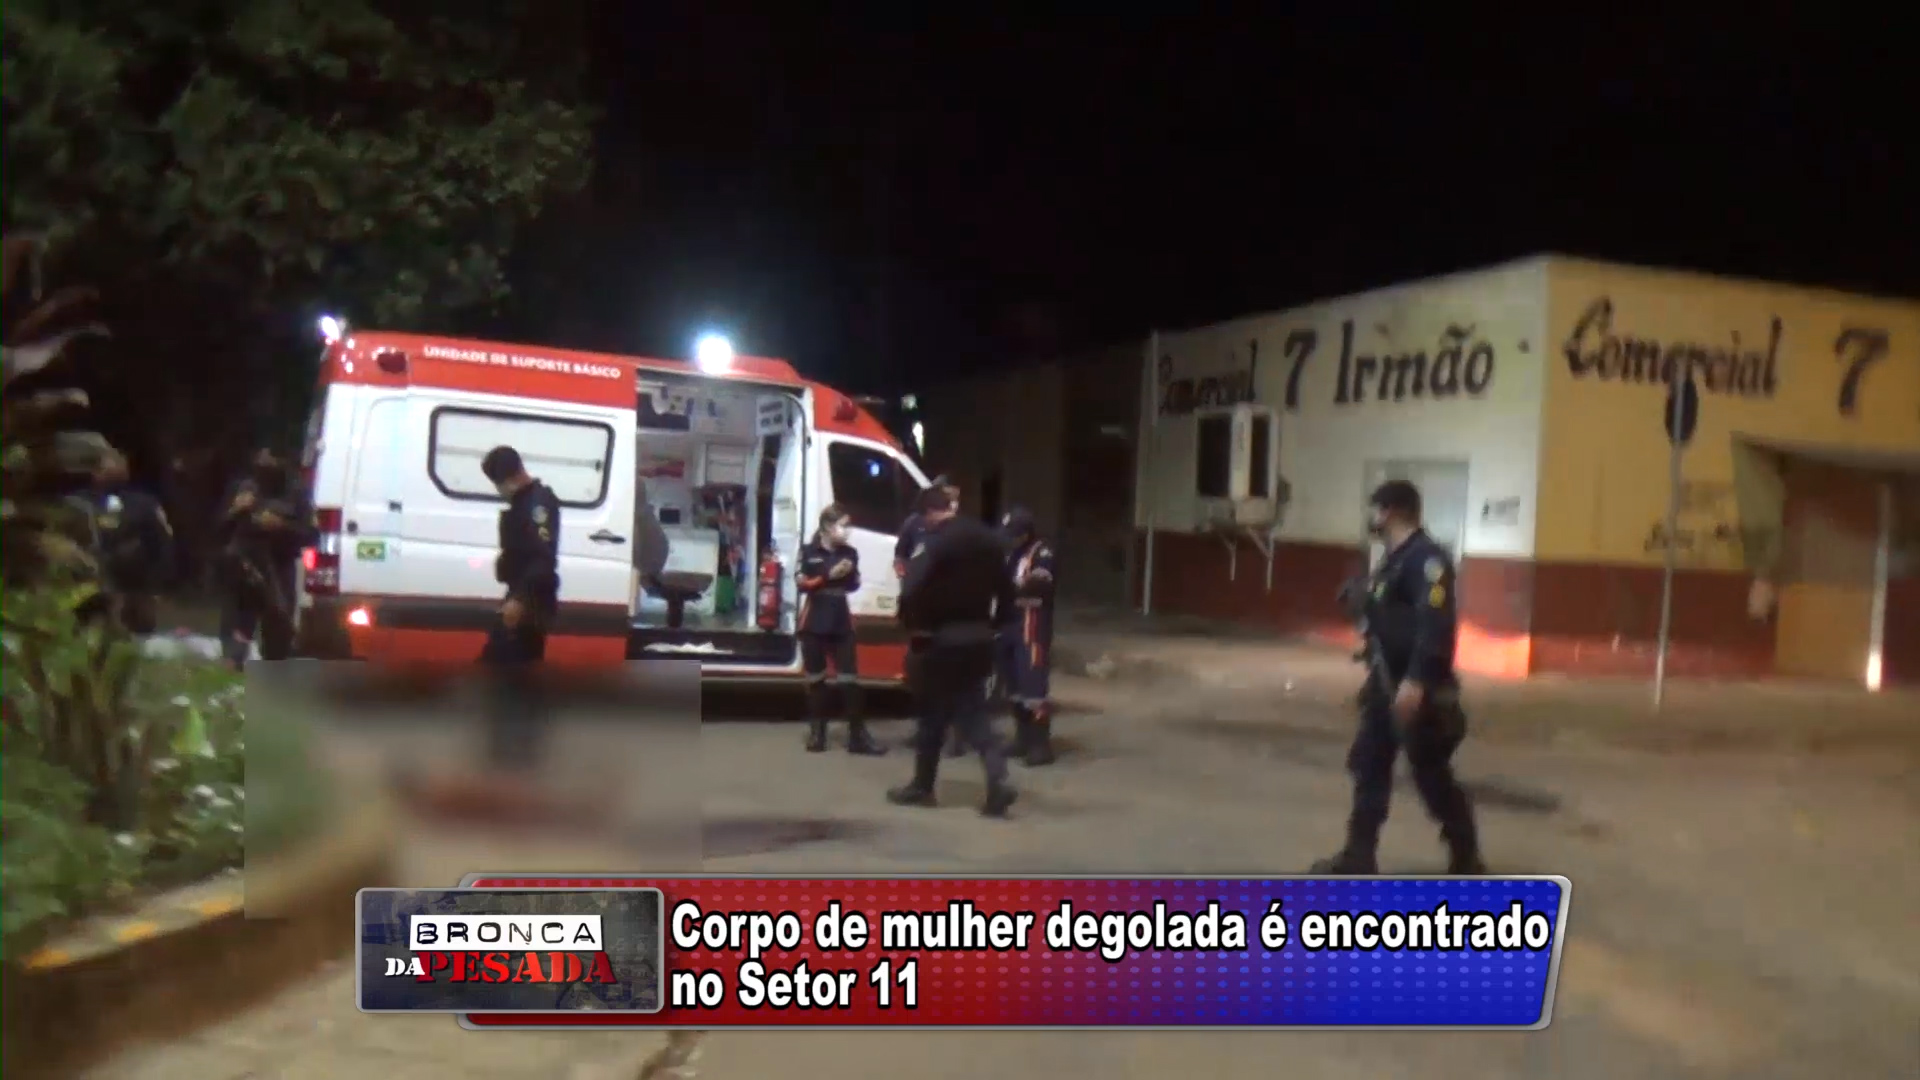 ARIQUEMES: Corpo de mulher é encontrado degolado na Avenida Guaporé do Setor 11